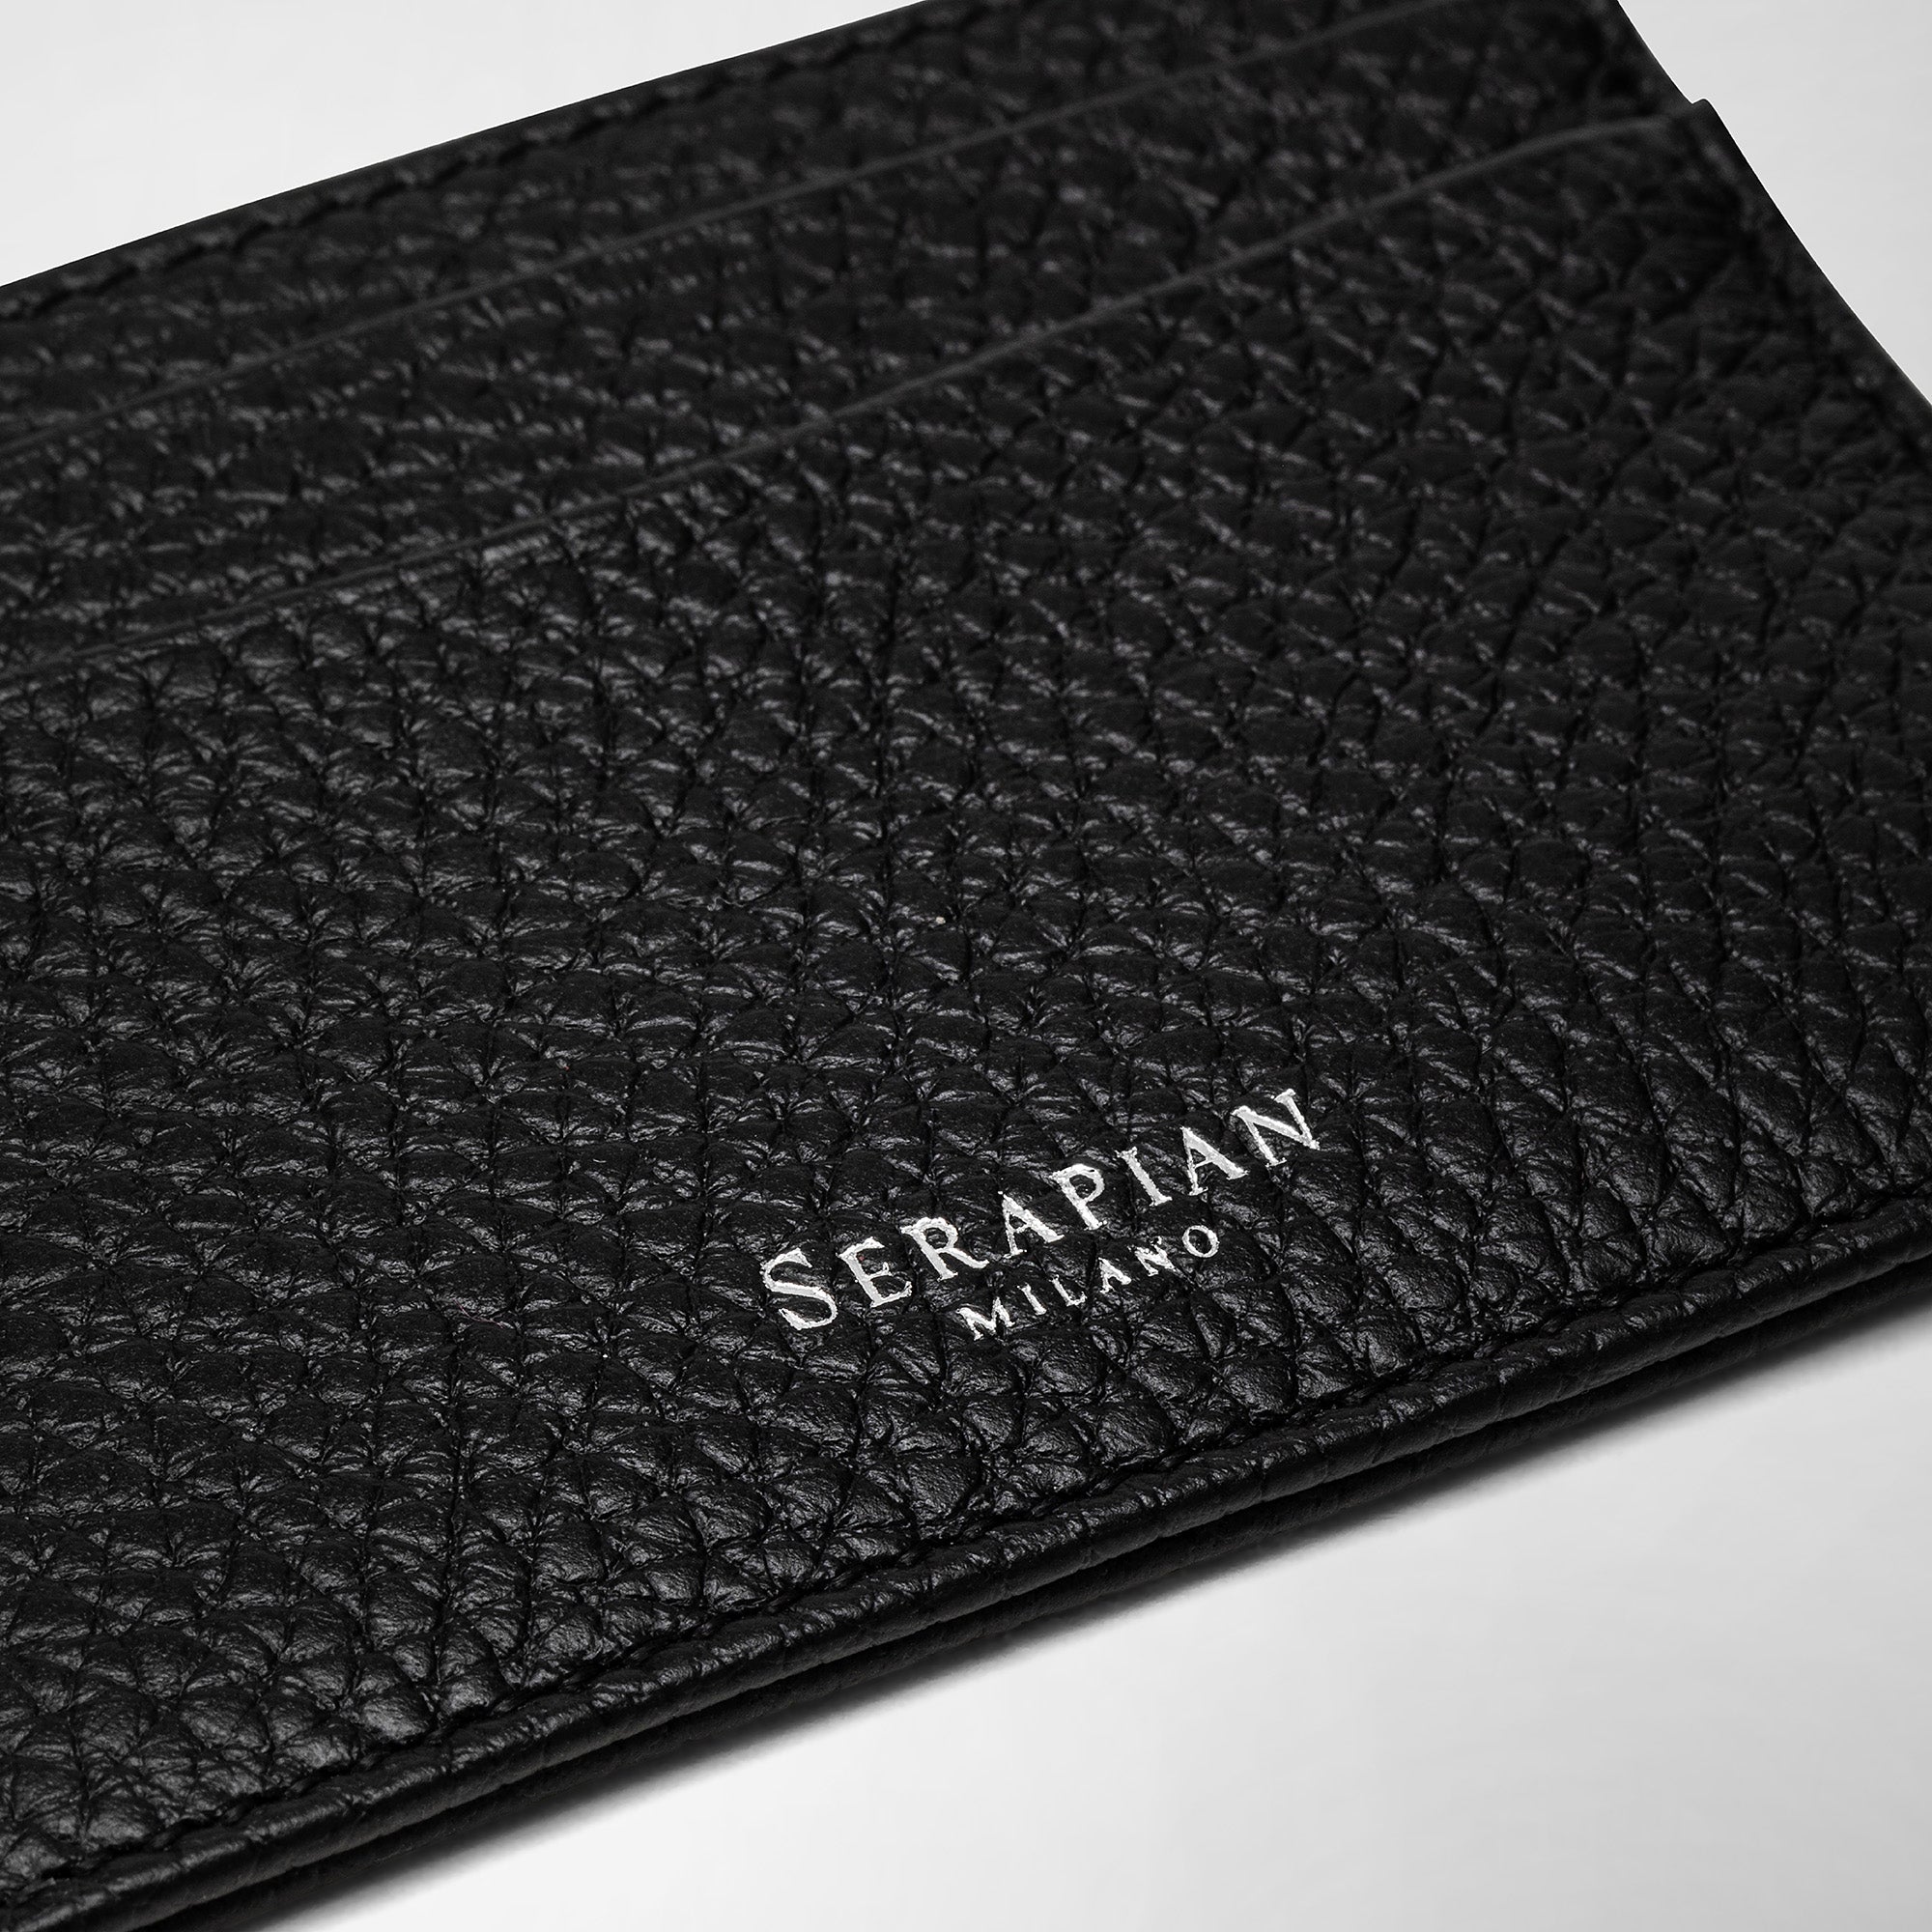 Serapian Man's 4-Card Holder